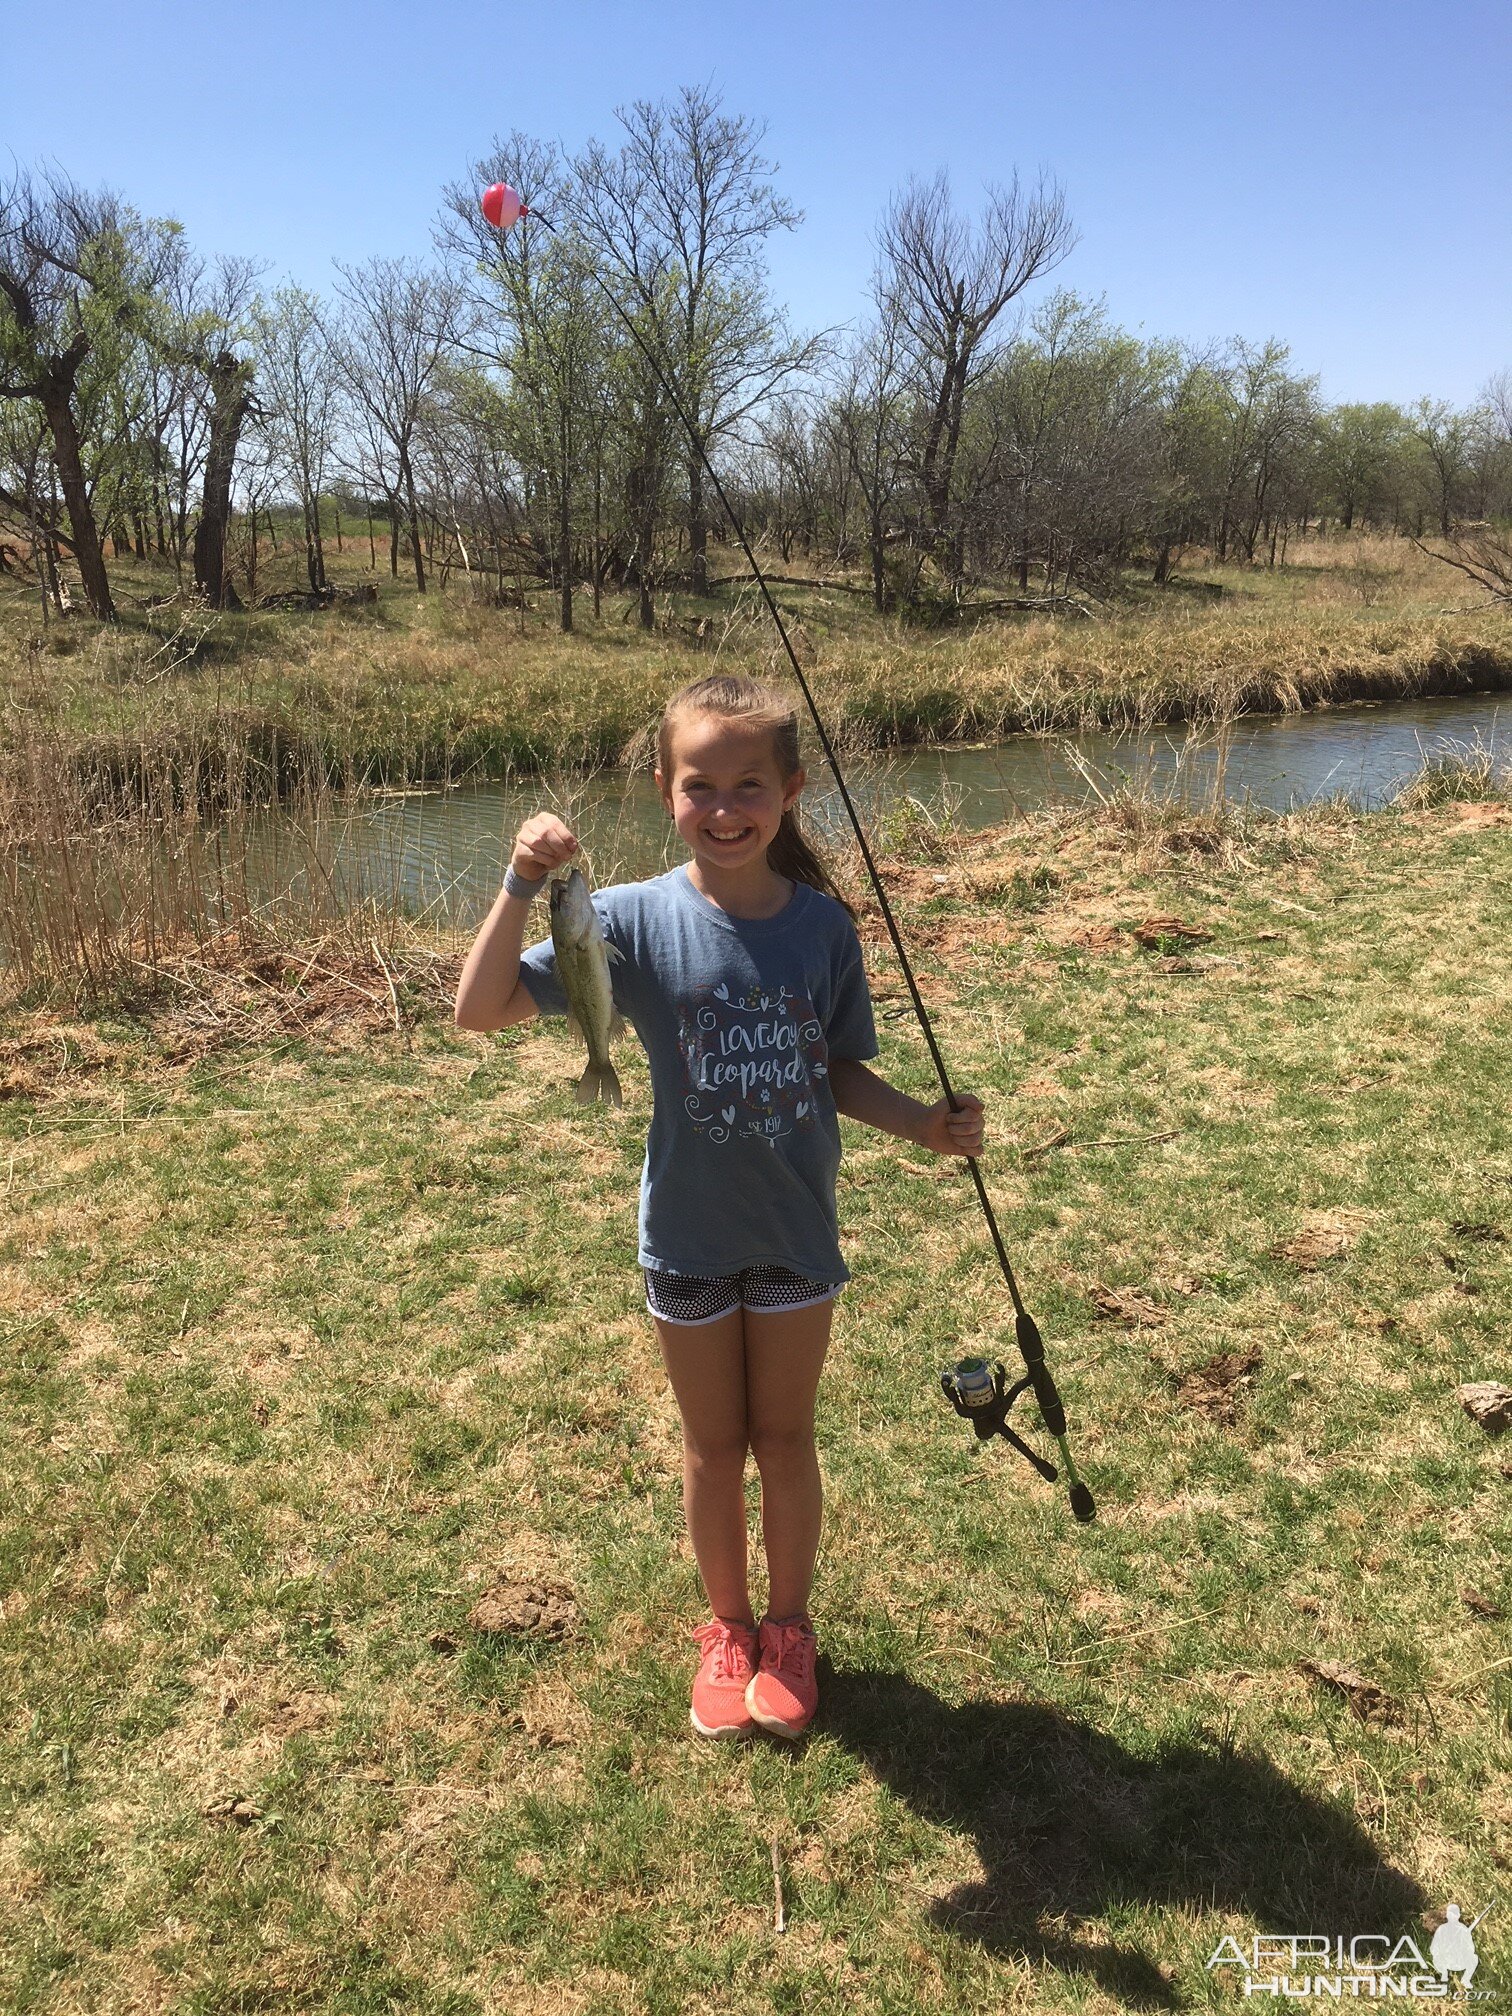 Fishing at the Lake & the Creek